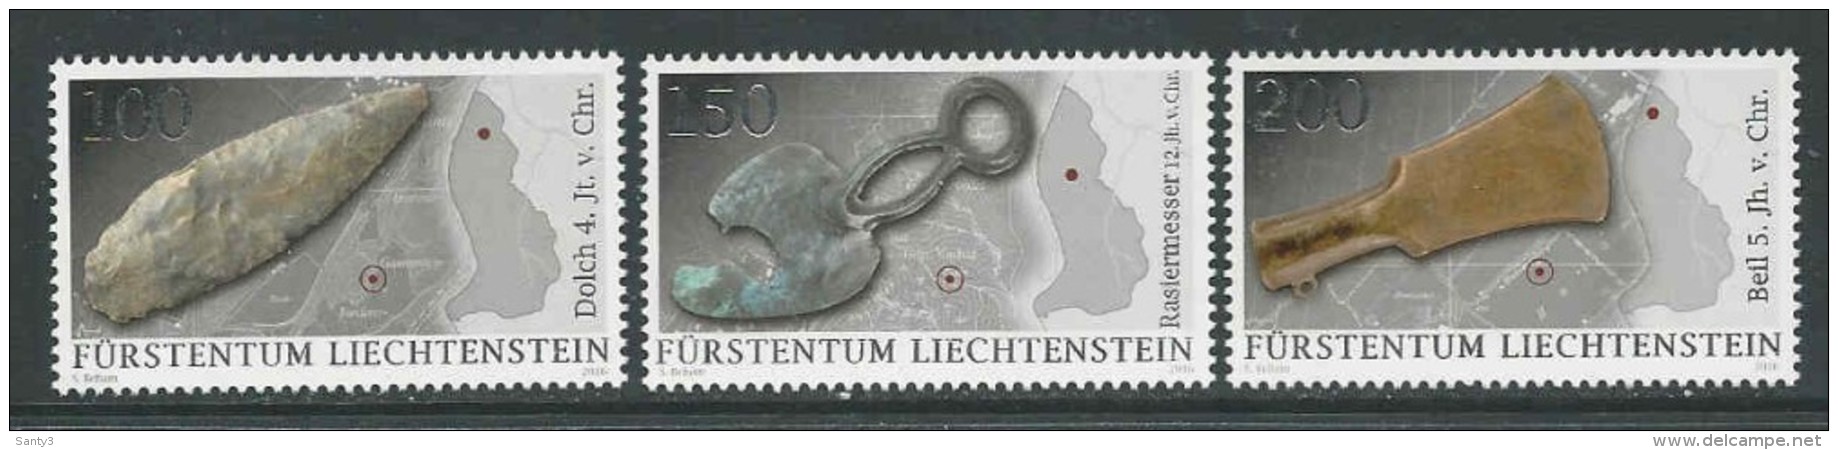 Liechtenstein, Mi Jaar 2016, Reeks,  Postfris (MNH) Zie Scan - Nuovi